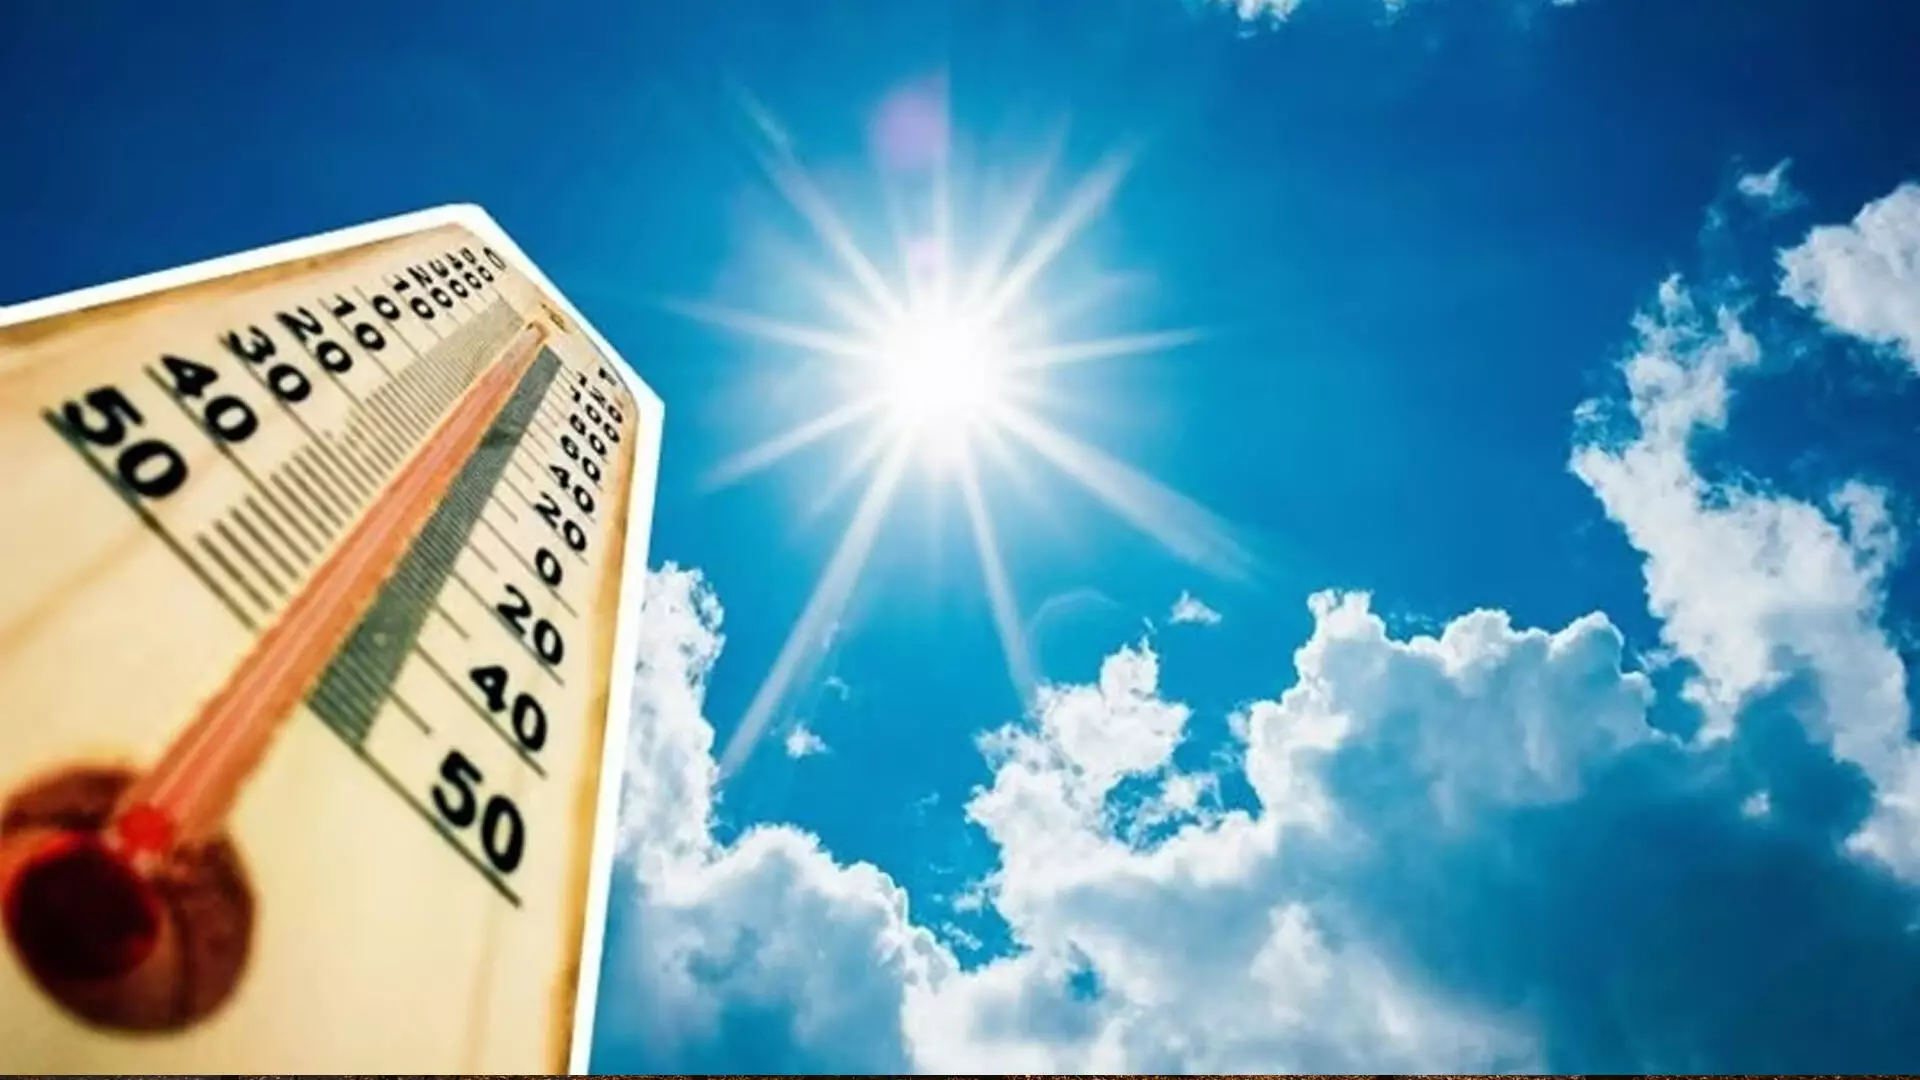 बेंगलुरु मौसम अपडेट: अधिकतम तापमान 38 डिग्री सेल्सियस तक पहुंच जाएगा